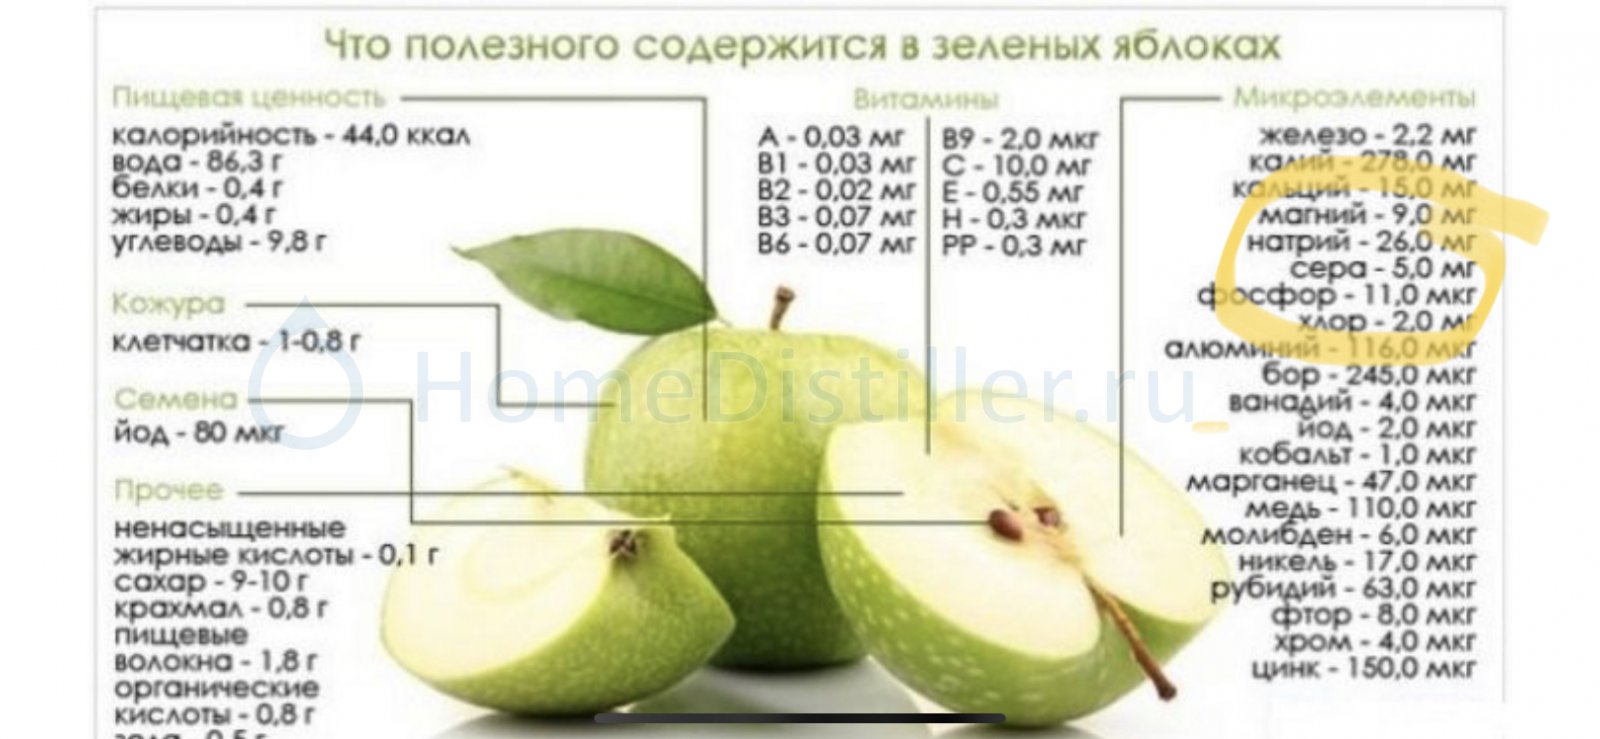 Какие витамины содержание в яблоках. Яблоко Семеренко калорийность. Яблоко Смиренко калорийность. Химический состав яблока таблица. Энергетическая ценность зеленого яблока.